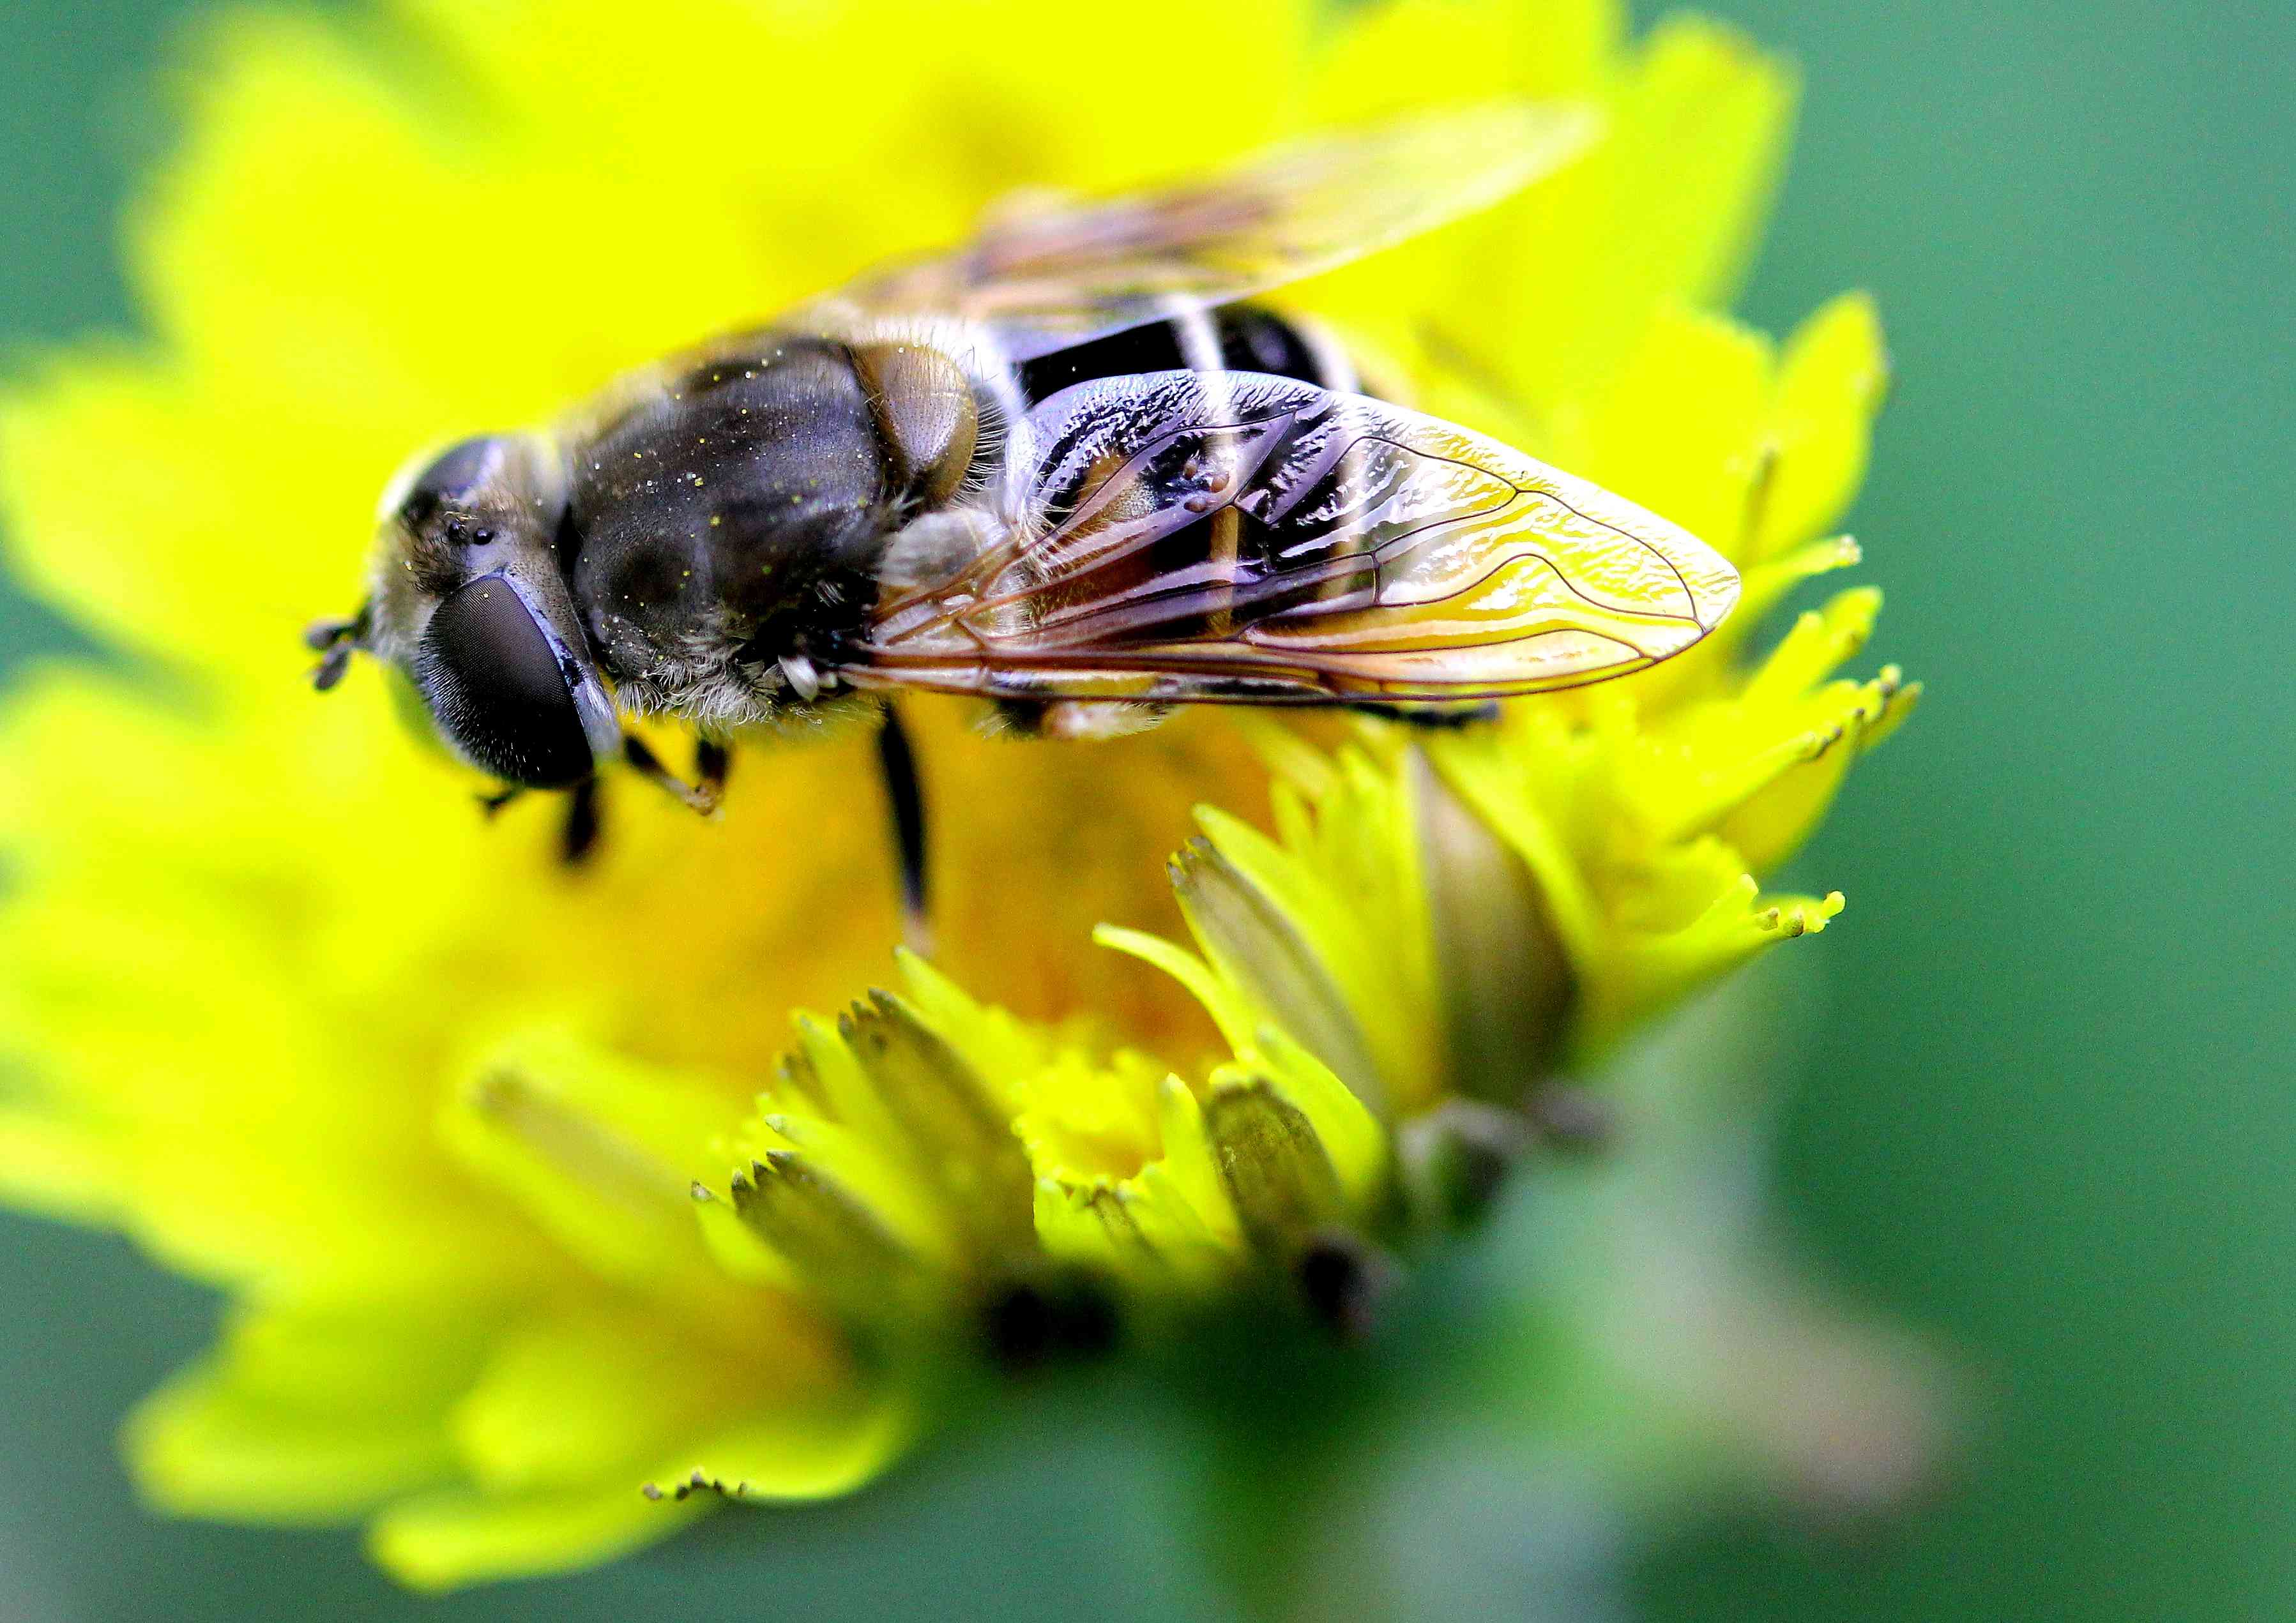 蜜蜂品种的介绍-知花蜂蜜网-,(P3),养蜂知识-蜜蜂|品种|蜂种|黑蜂|意蜂|中蜂|知花蜂蜜-中国蜂蜜行业门户网站-www.zhfengmi ...